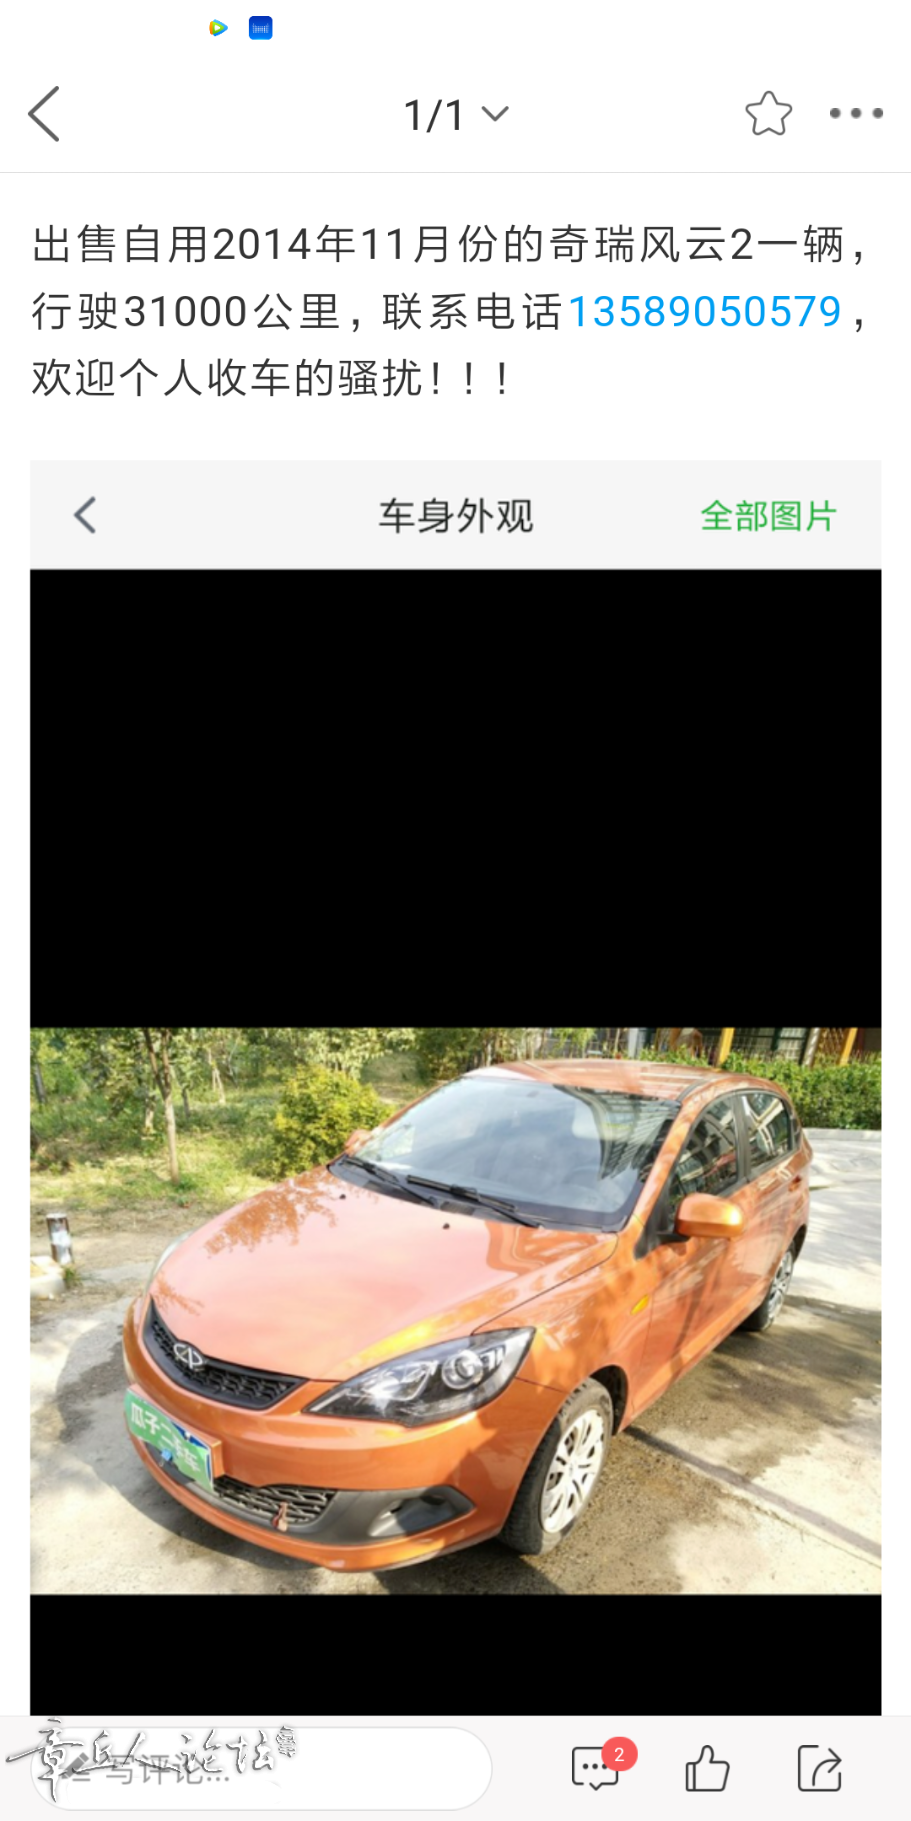 Screenshot_2018-10-20-20-01-40-340_com.dazhangqiu.forum.png